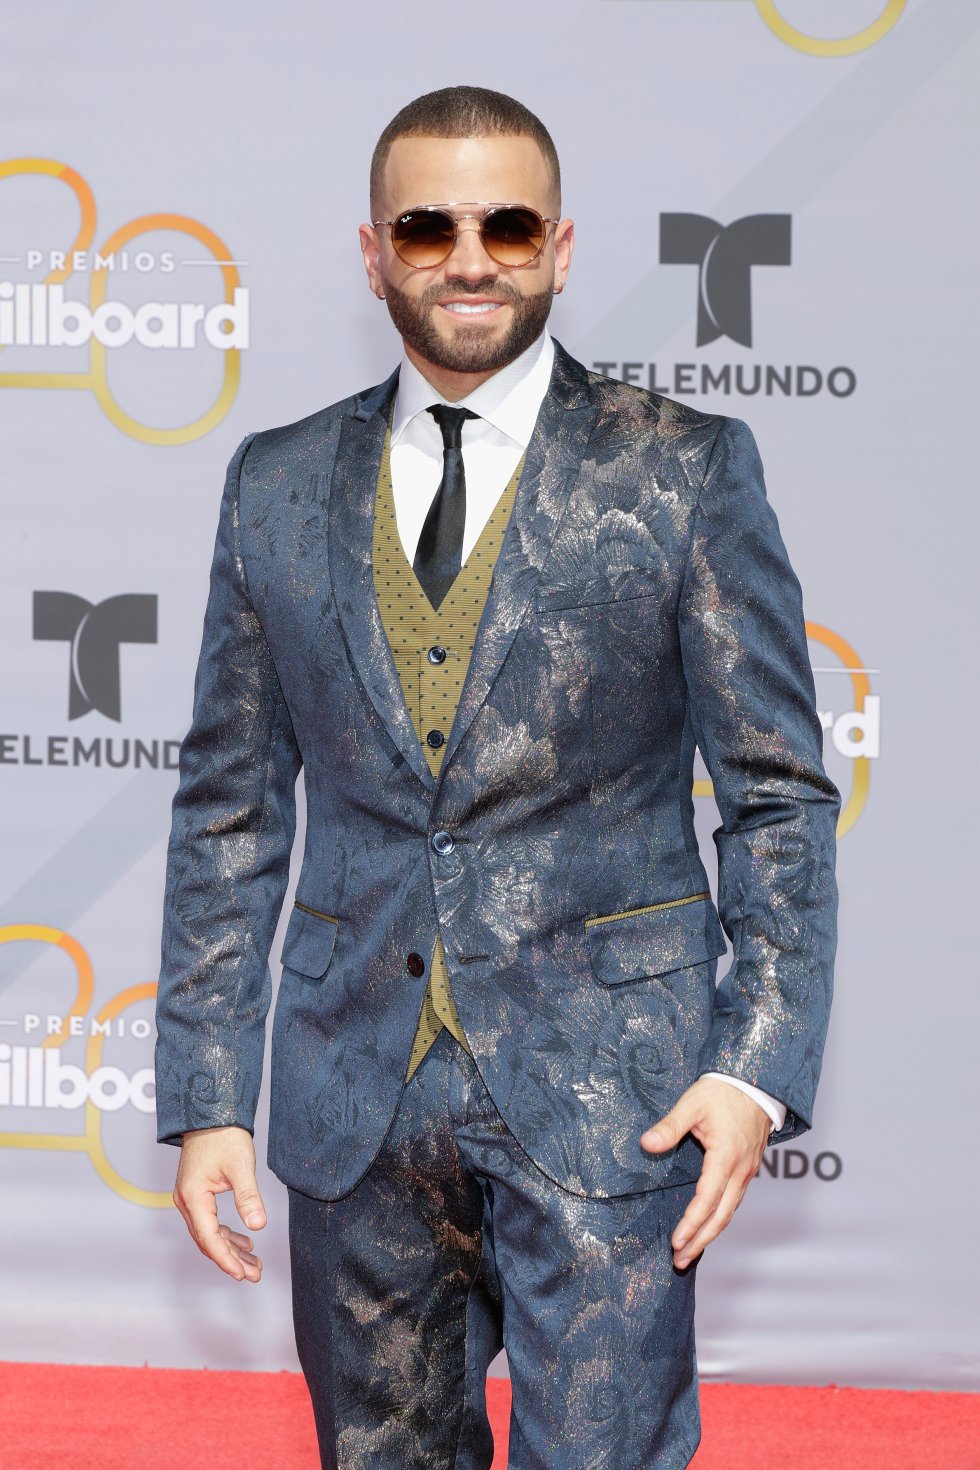 Las colaboraciones fueron las grandes protagonistas de los Billboard Latin Music Awards 2018